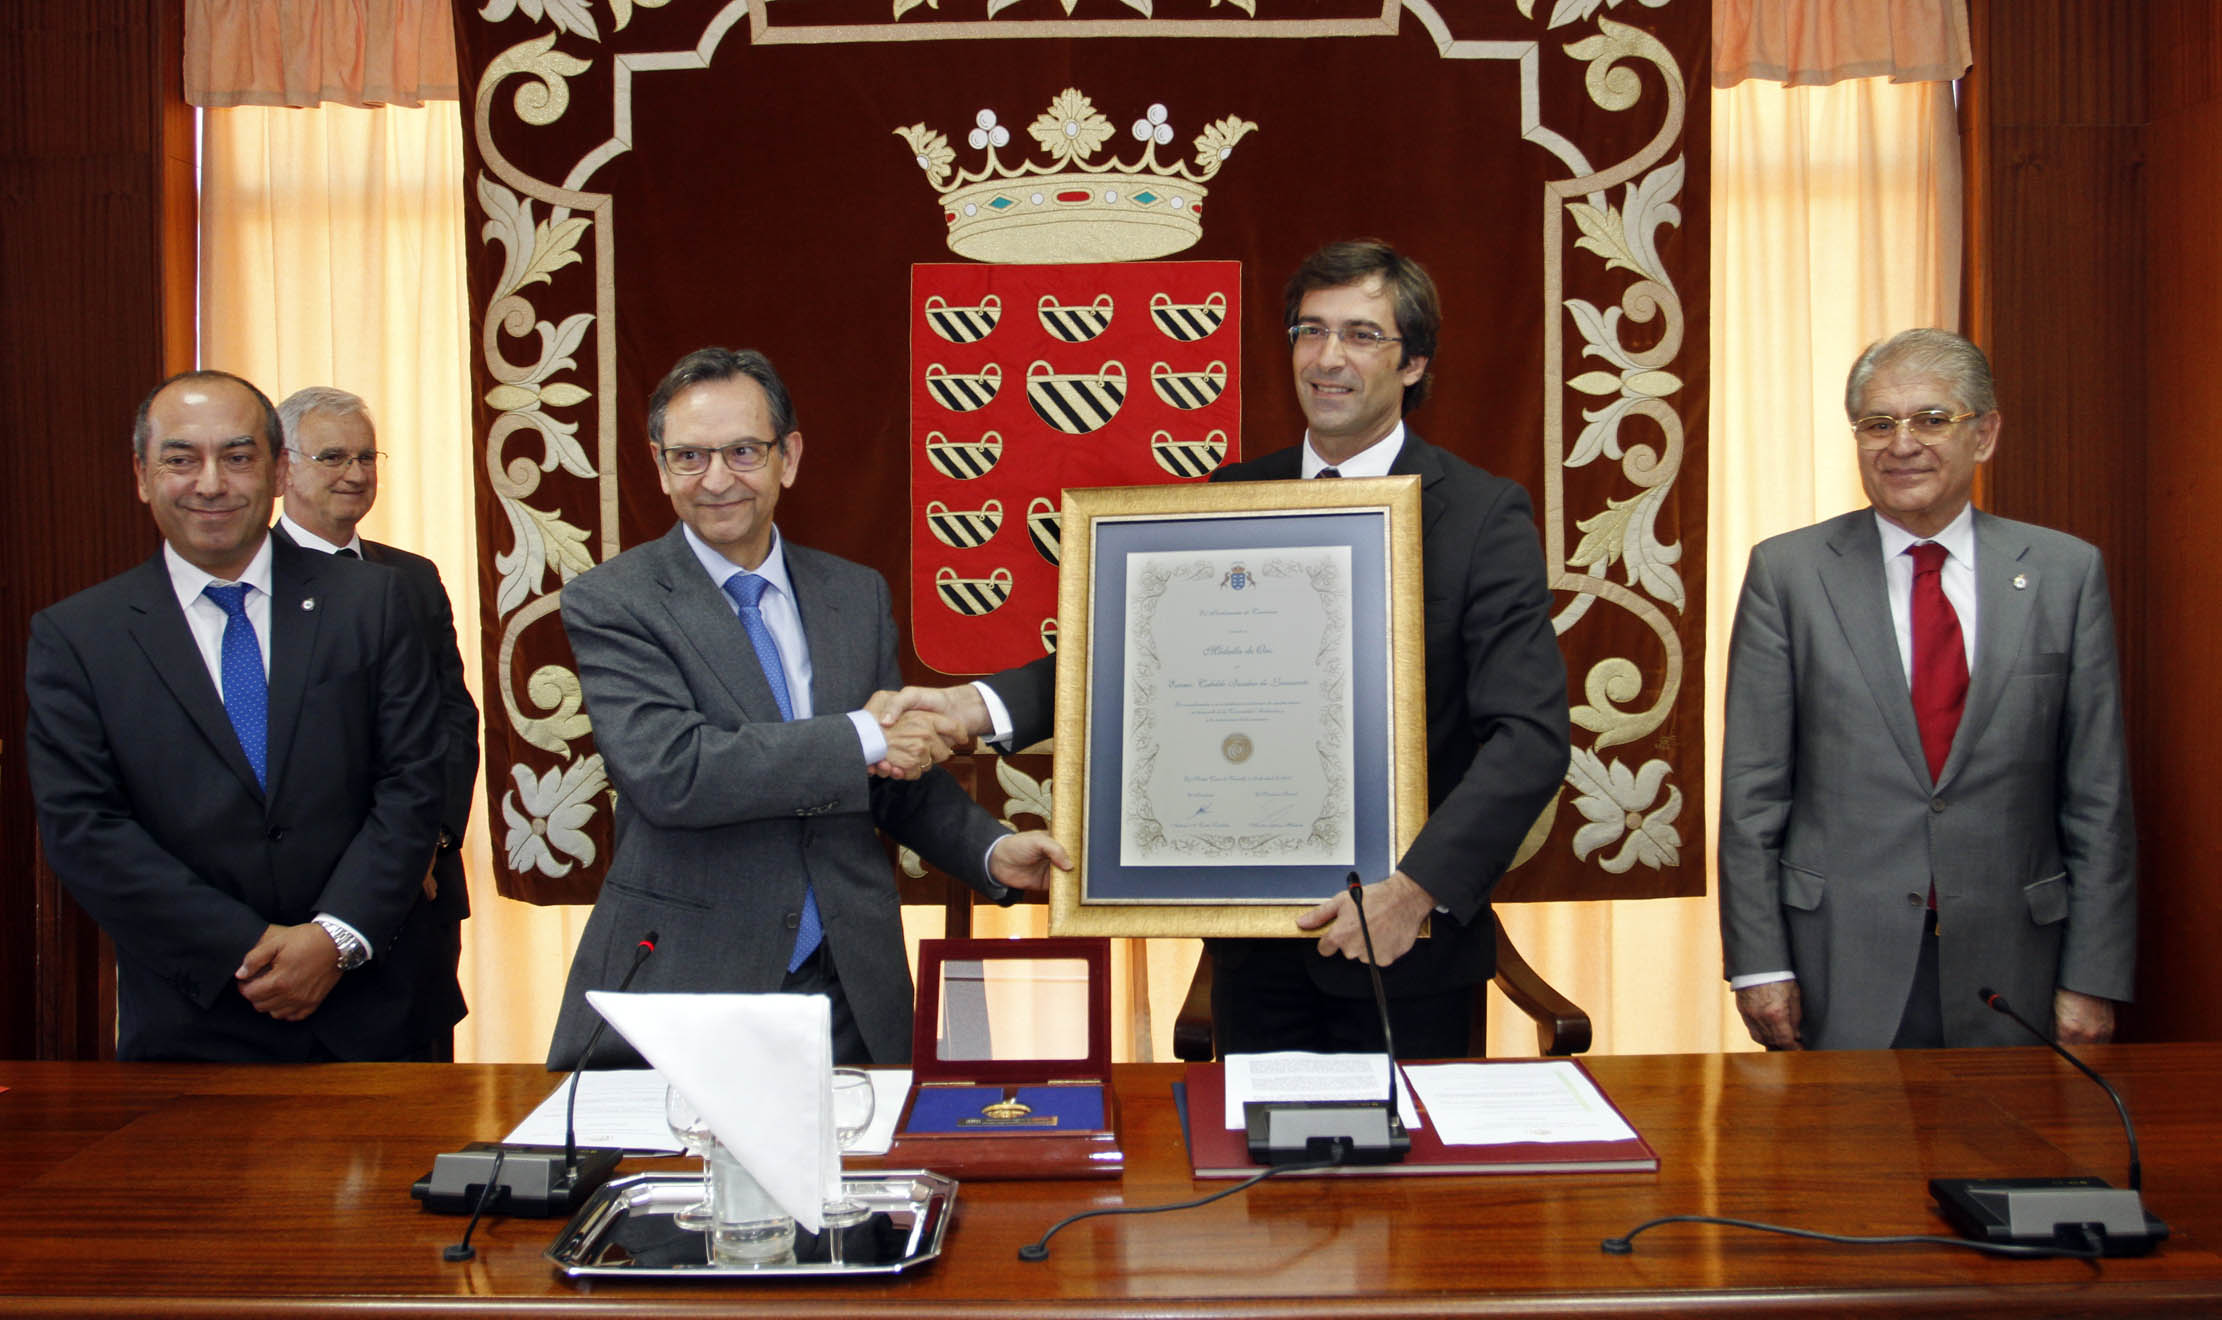 Entrega de la Medalla de oro del Parlamento al Cabildo de Lanzarote.